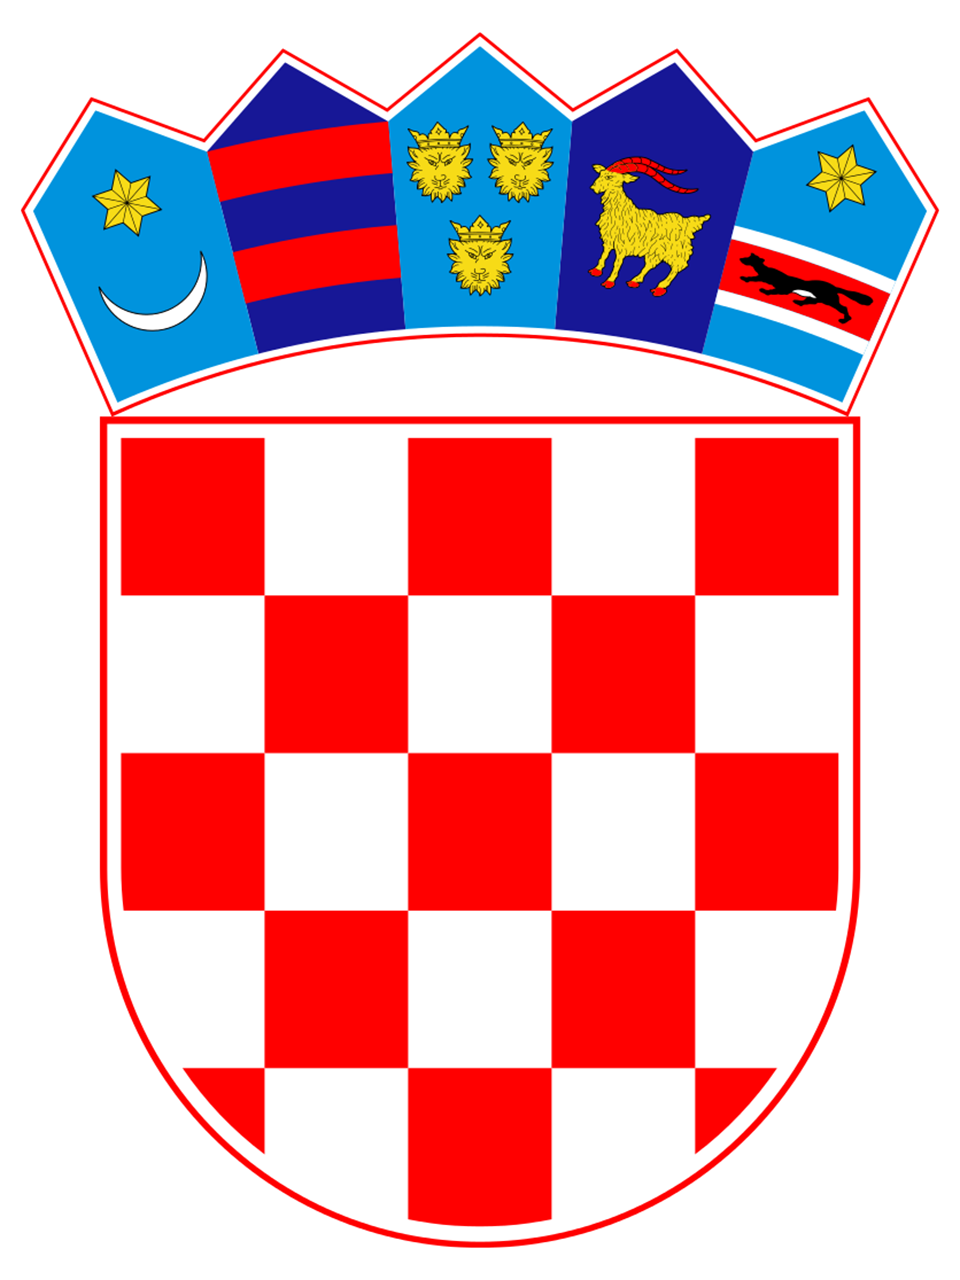 Grb Republike Hrvatske.